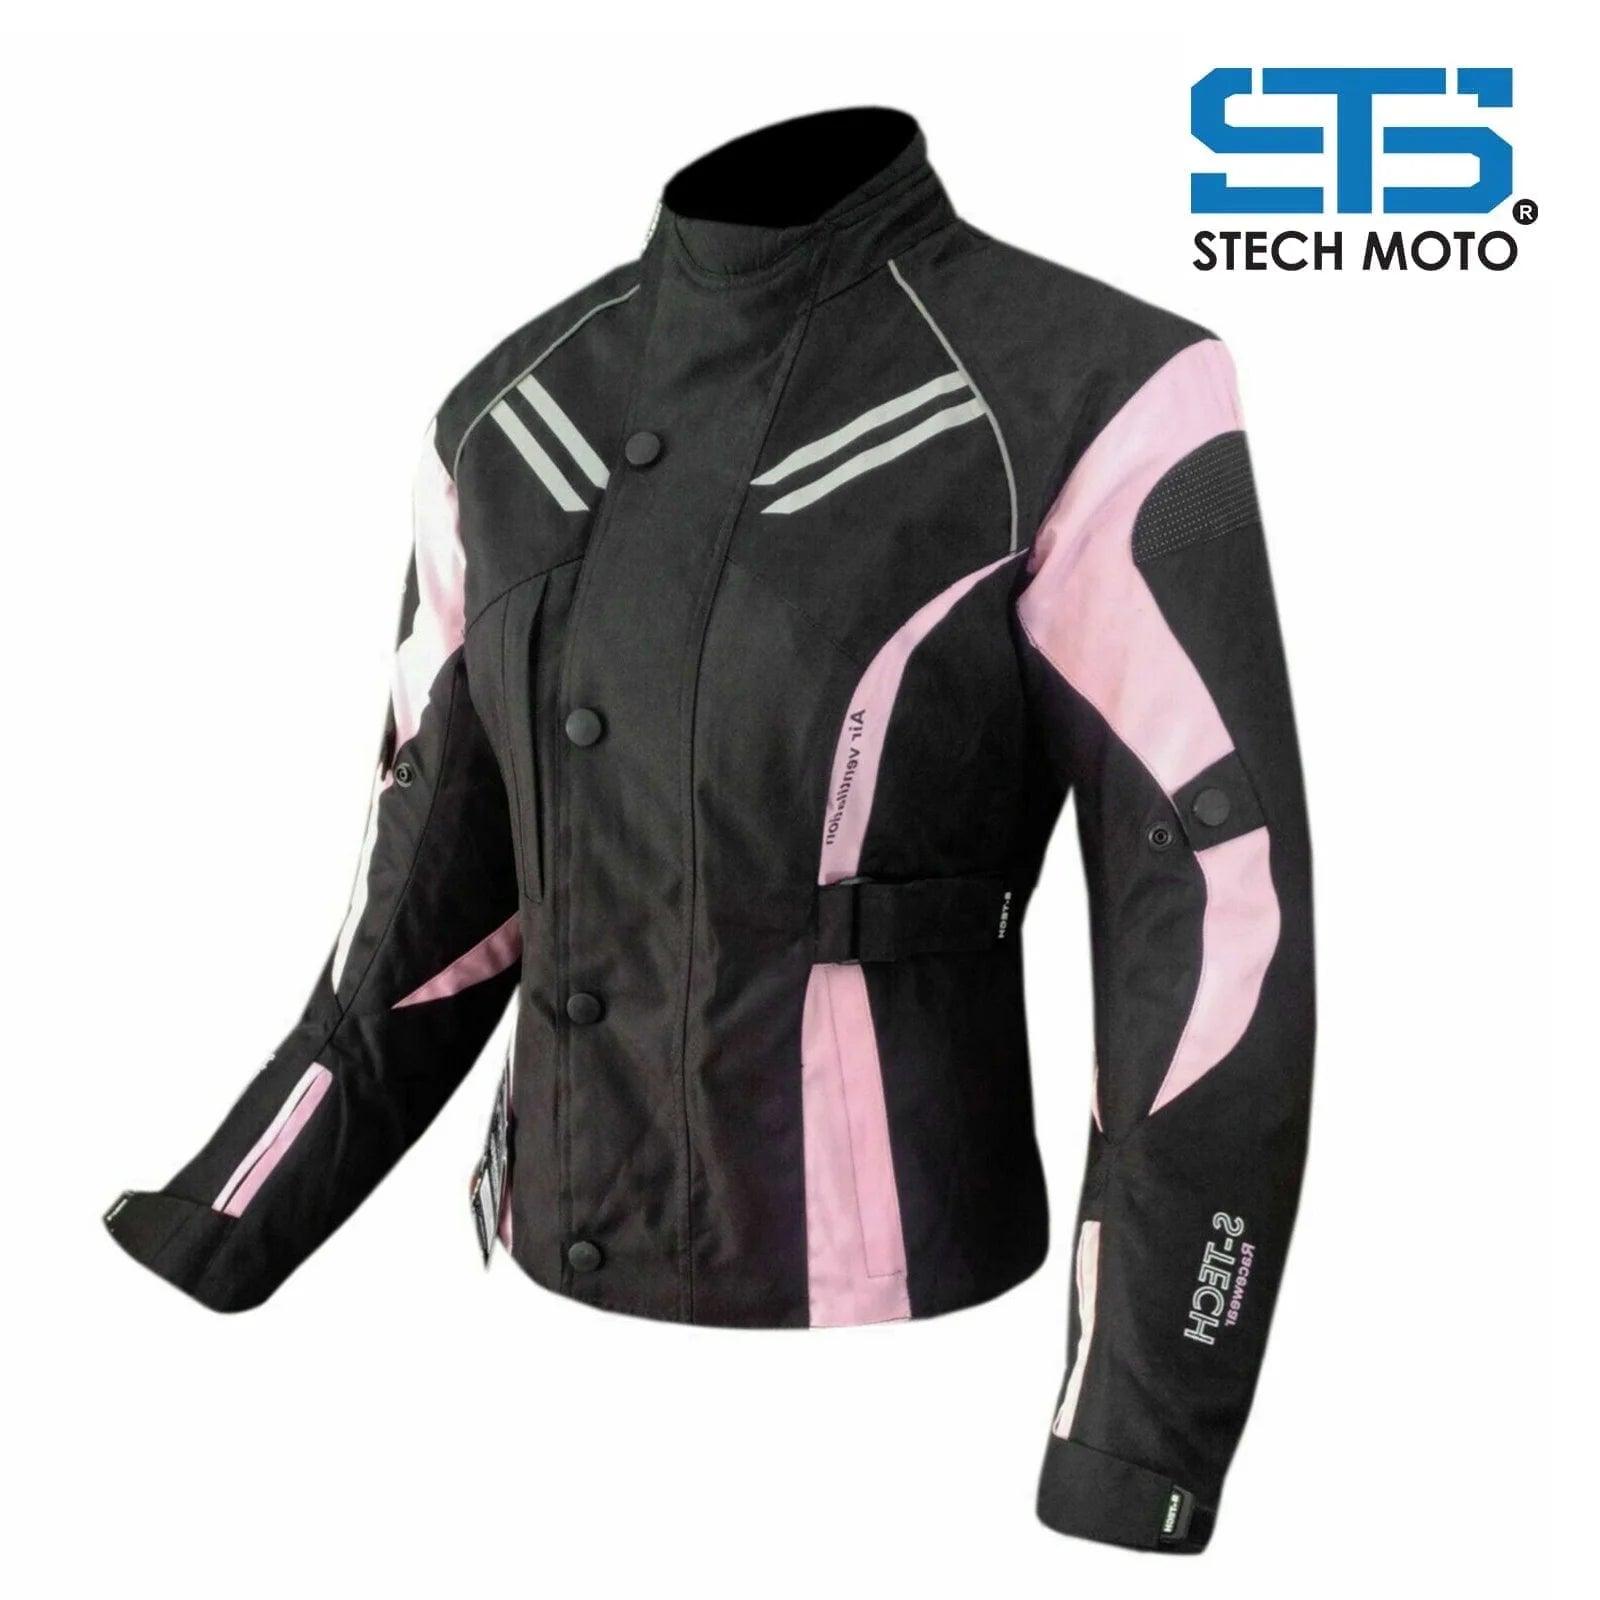 Moto Giubbotto in tessuto da donna Stechmoto ST 840 H2O Tech Tre strati 4-stagioni - Am Moto-Abbigliamento Moto